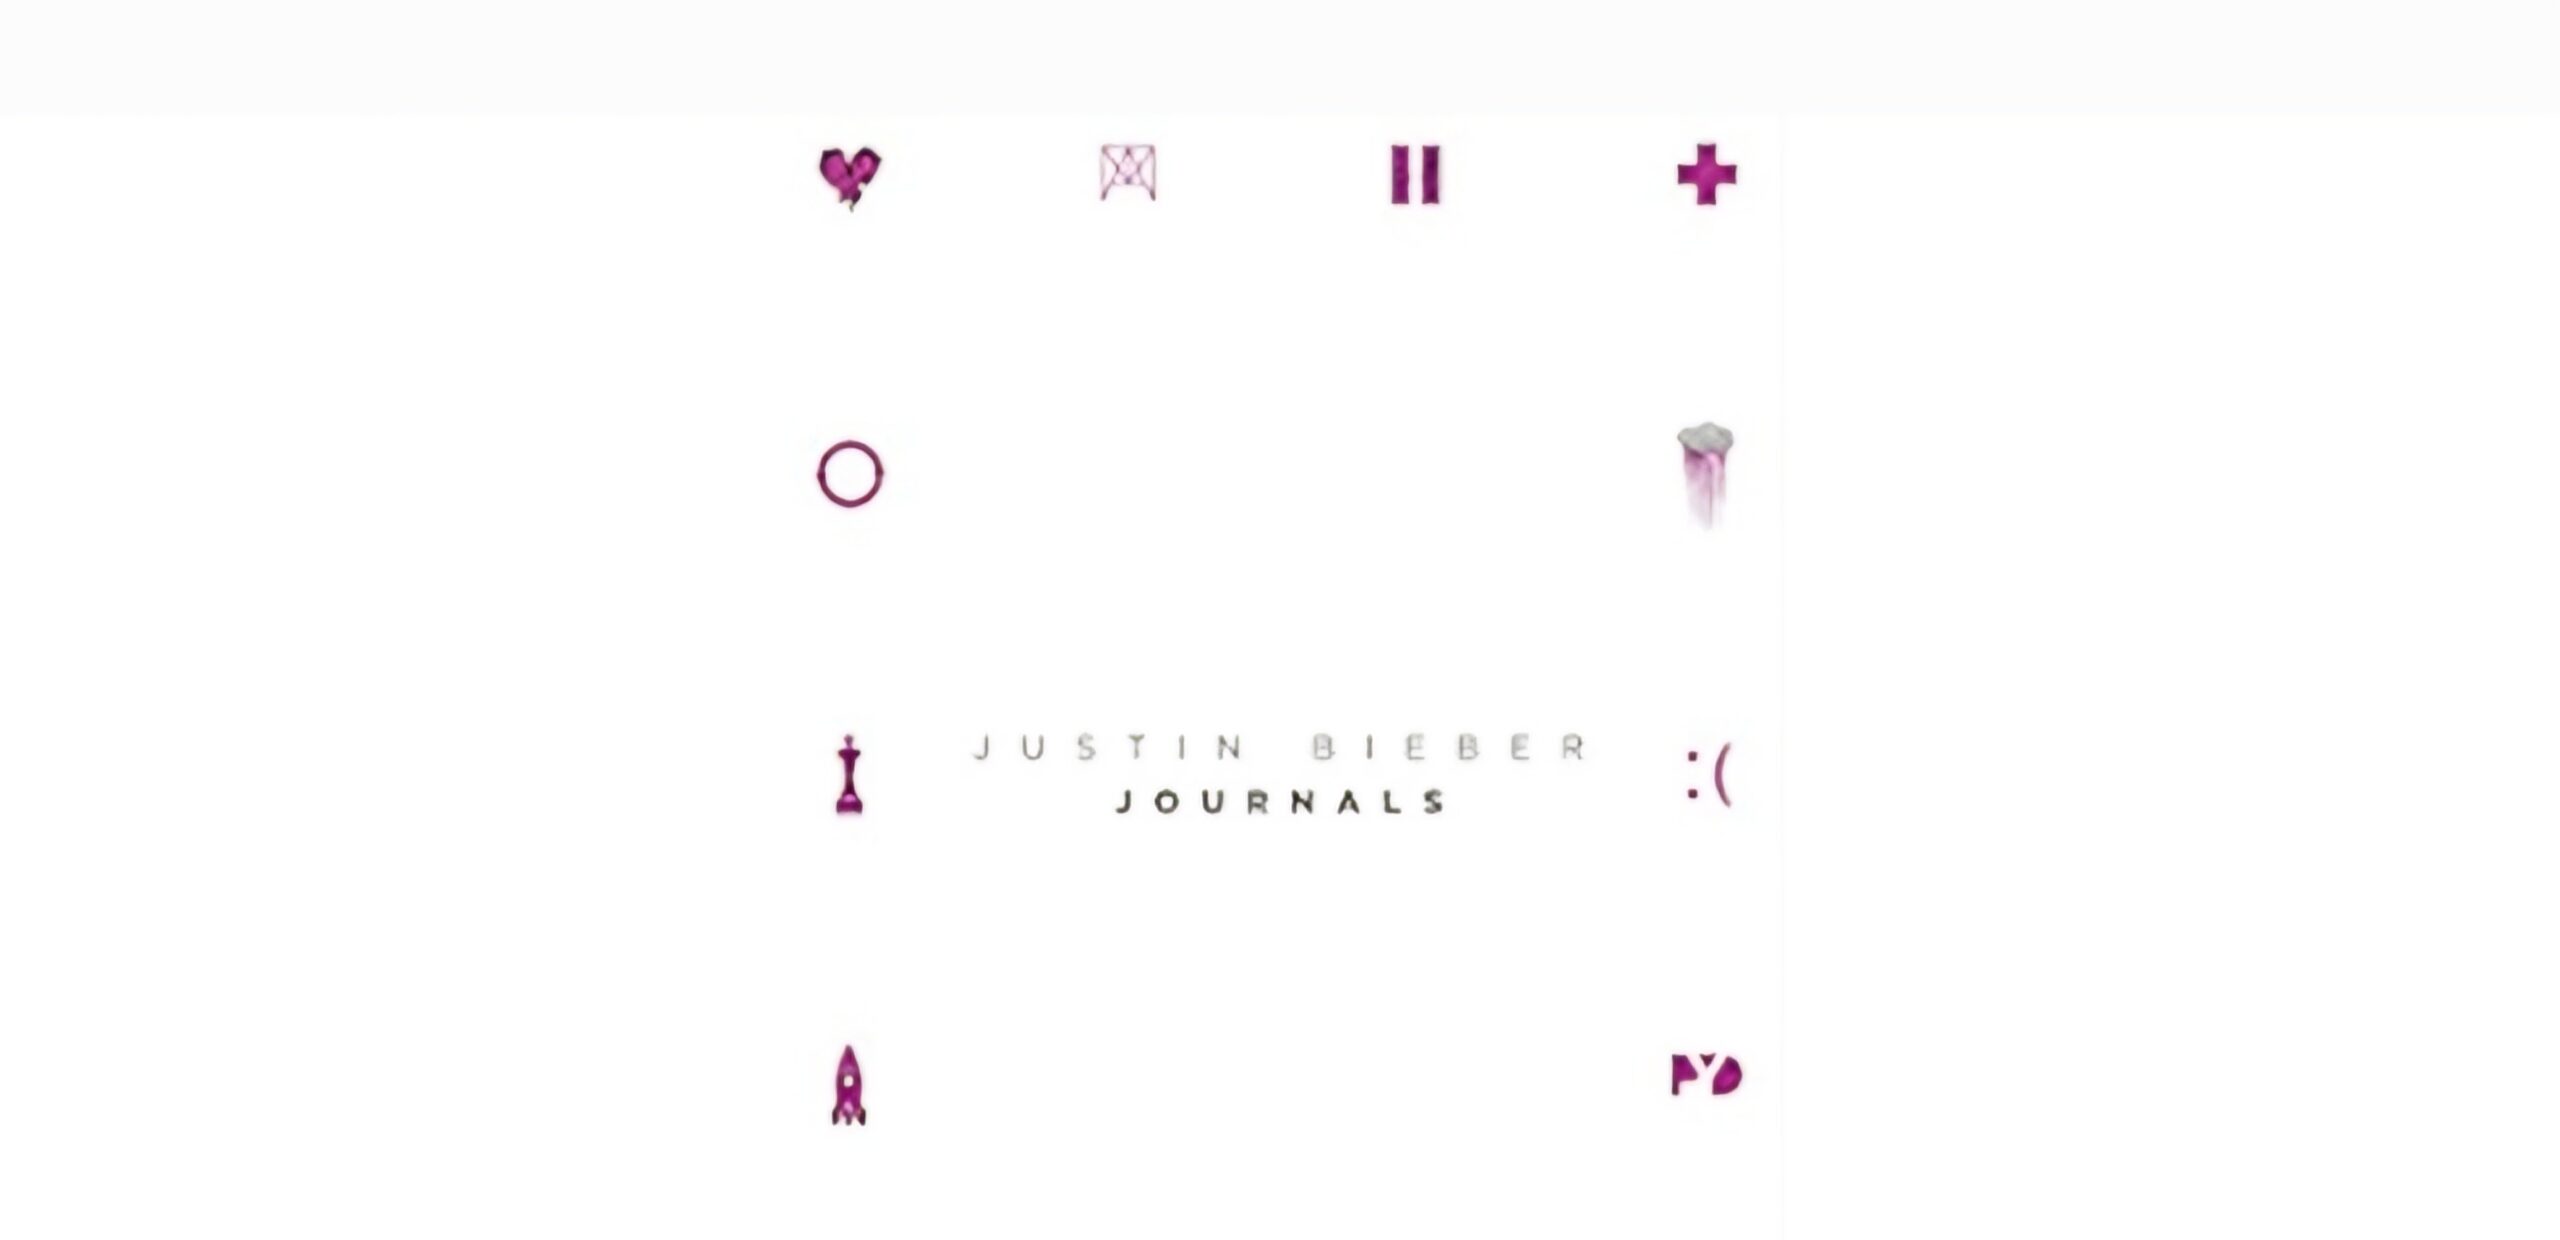 Justin Bieber journals